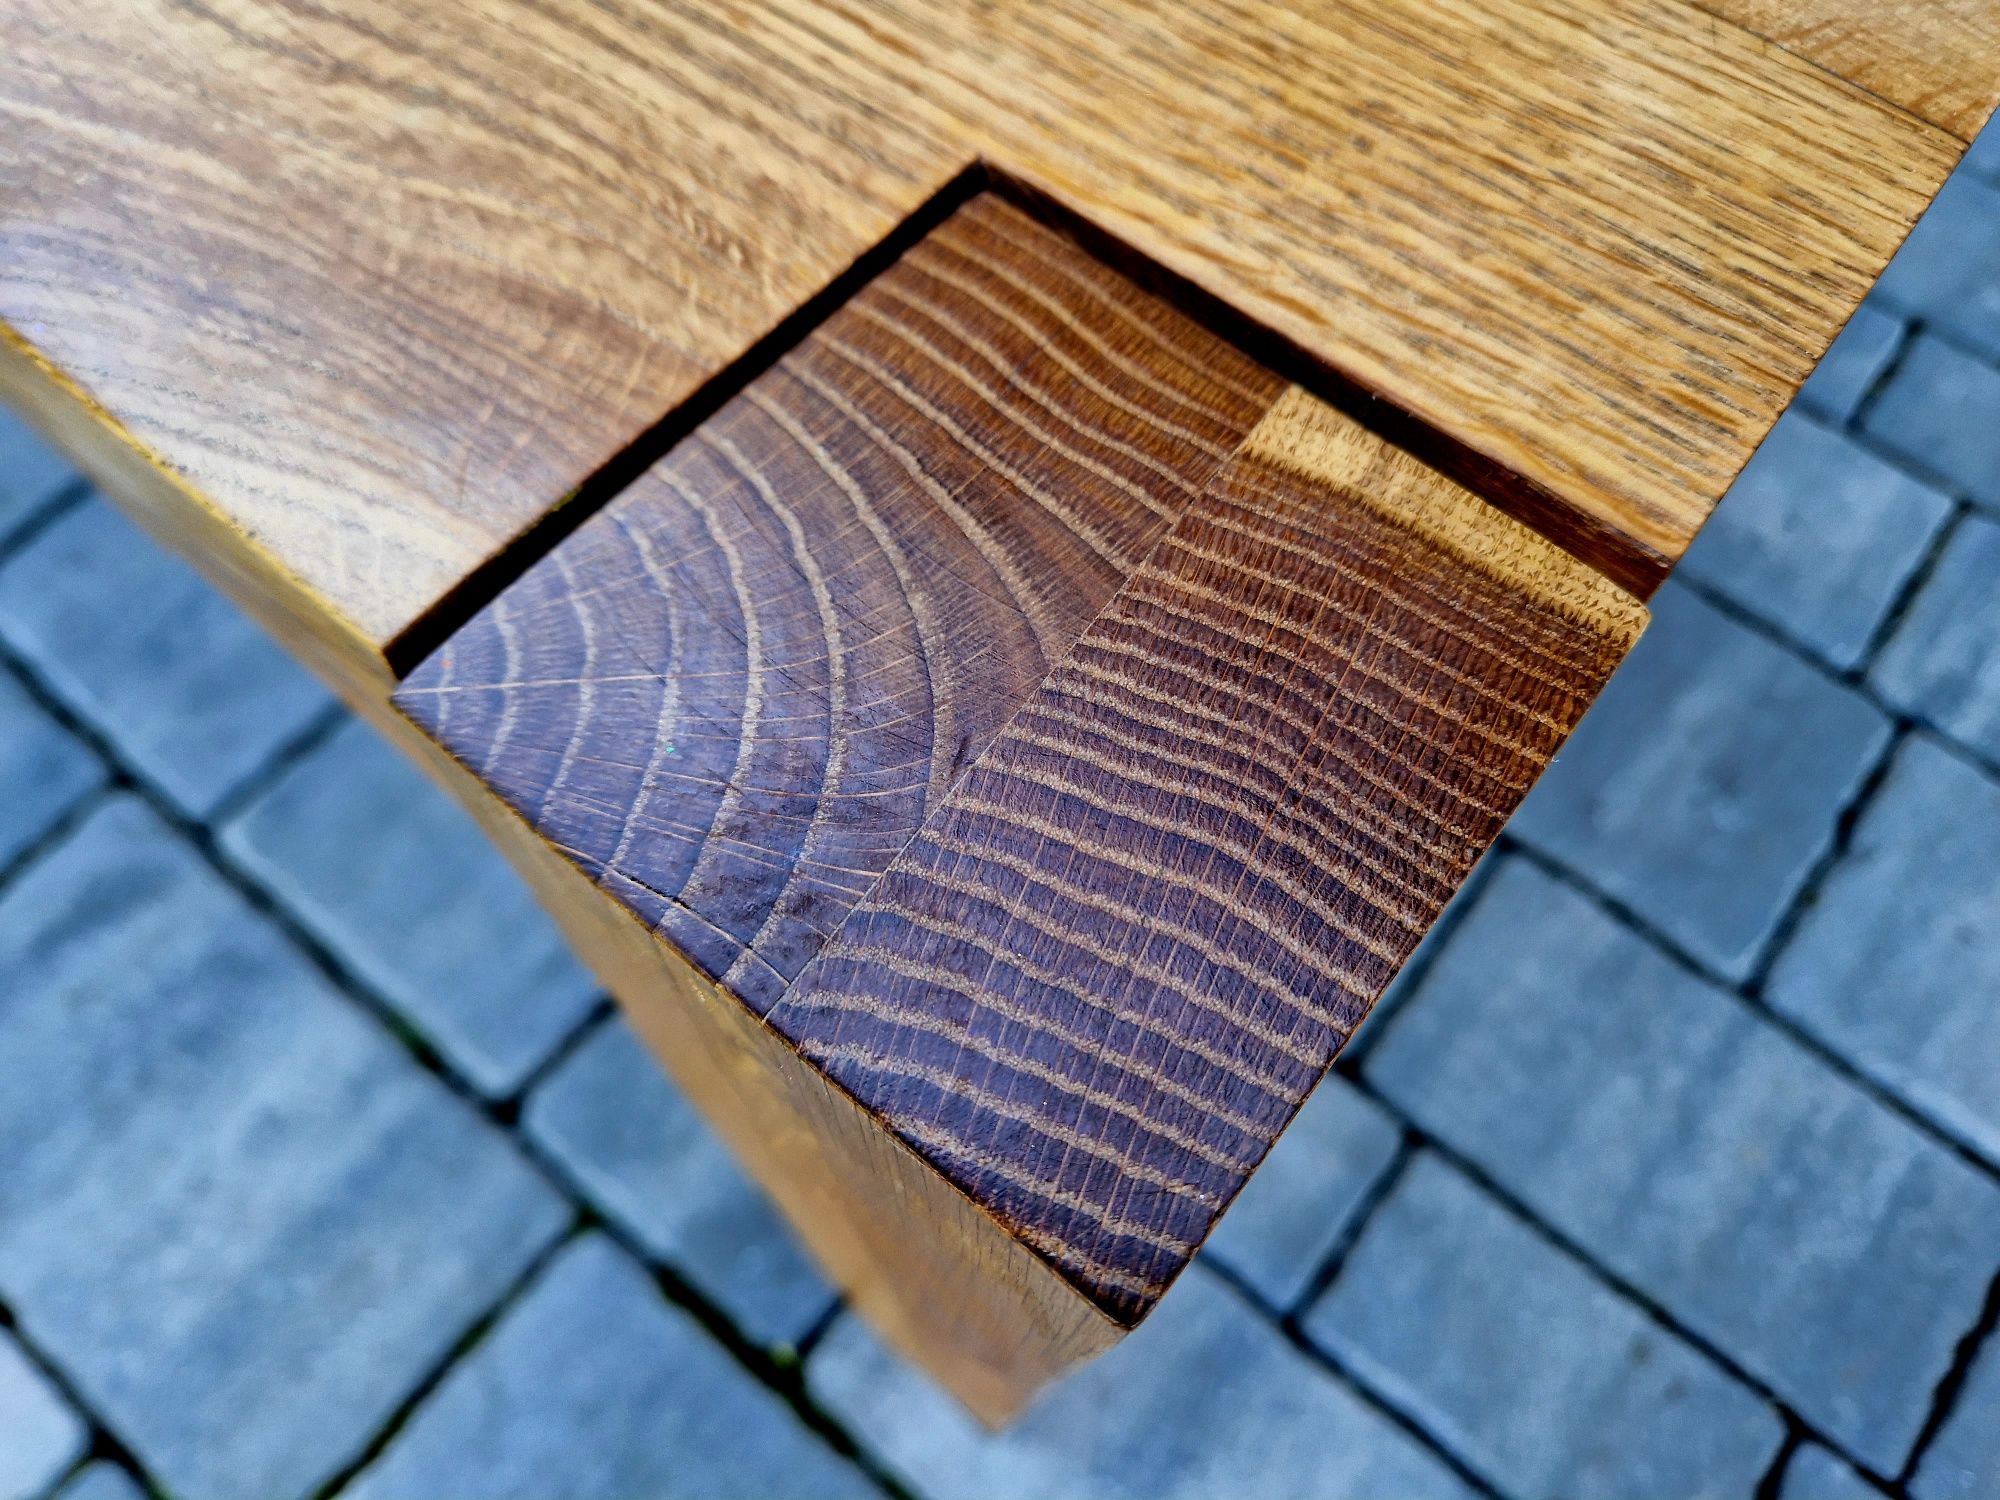 Piękny Stół dębowy z litego drewna z 2 dostawkami